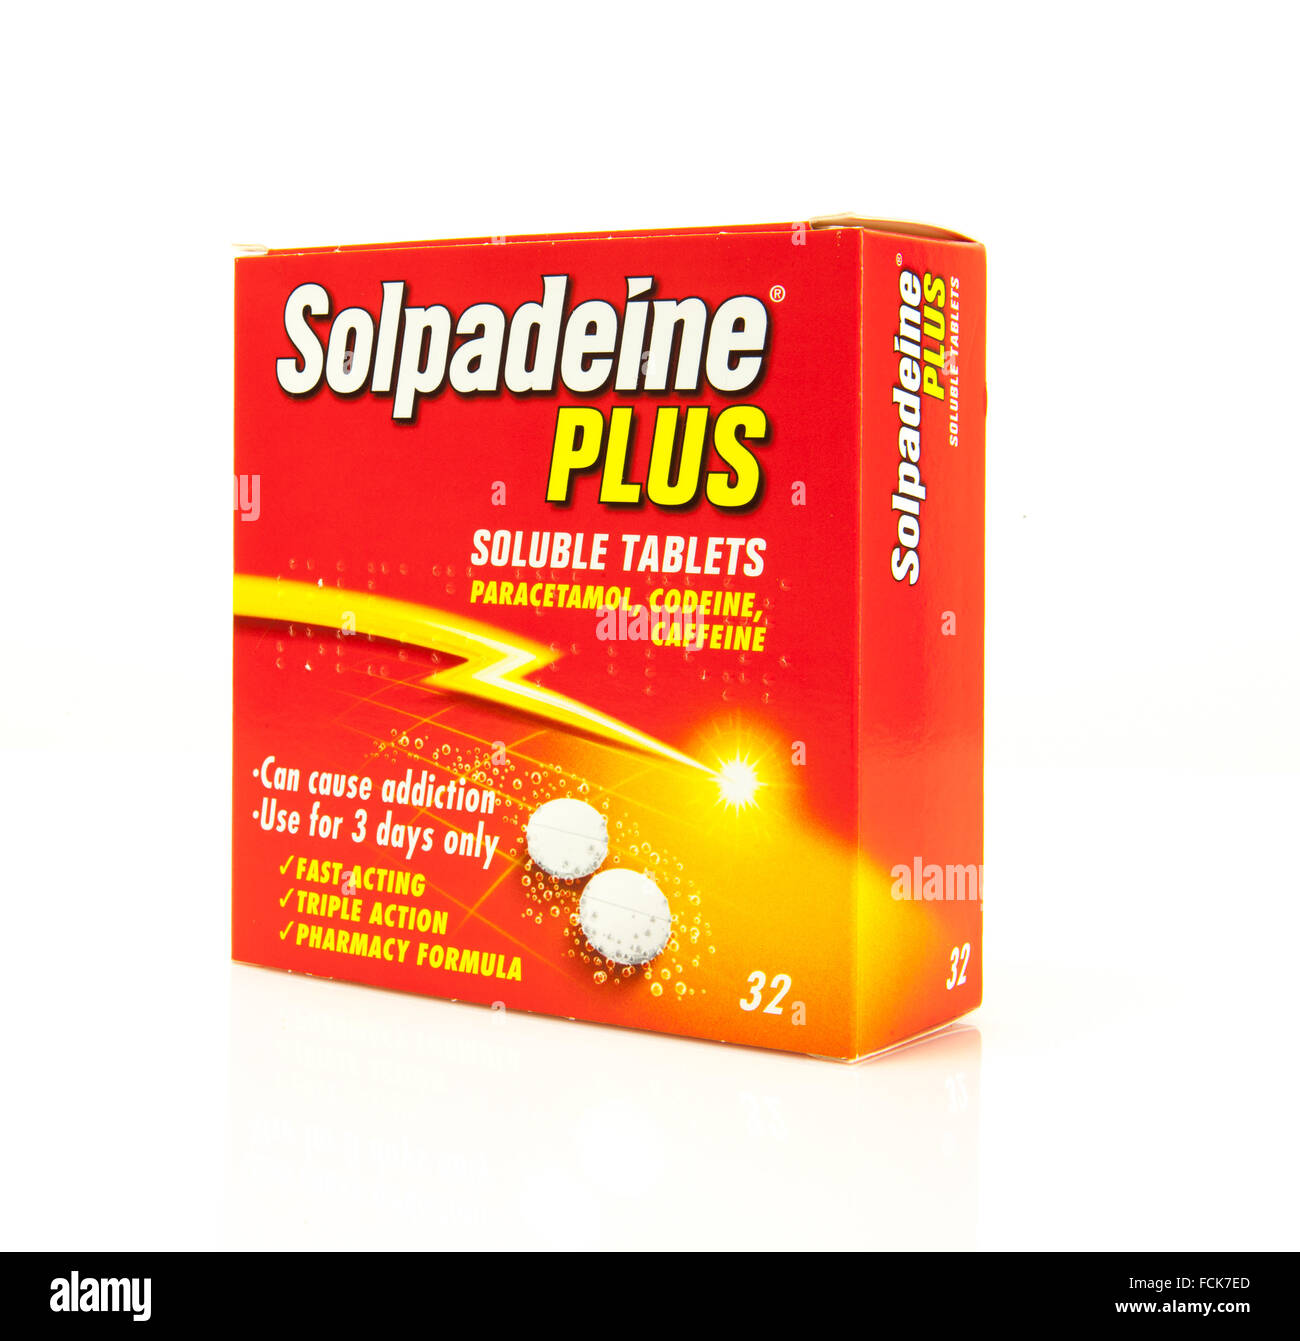 Solpadeine est le nom de marque de médicament de soulagement de douleur contenant le paracétamol, la caféine et la codéine en ce moment faites Banque D'Images